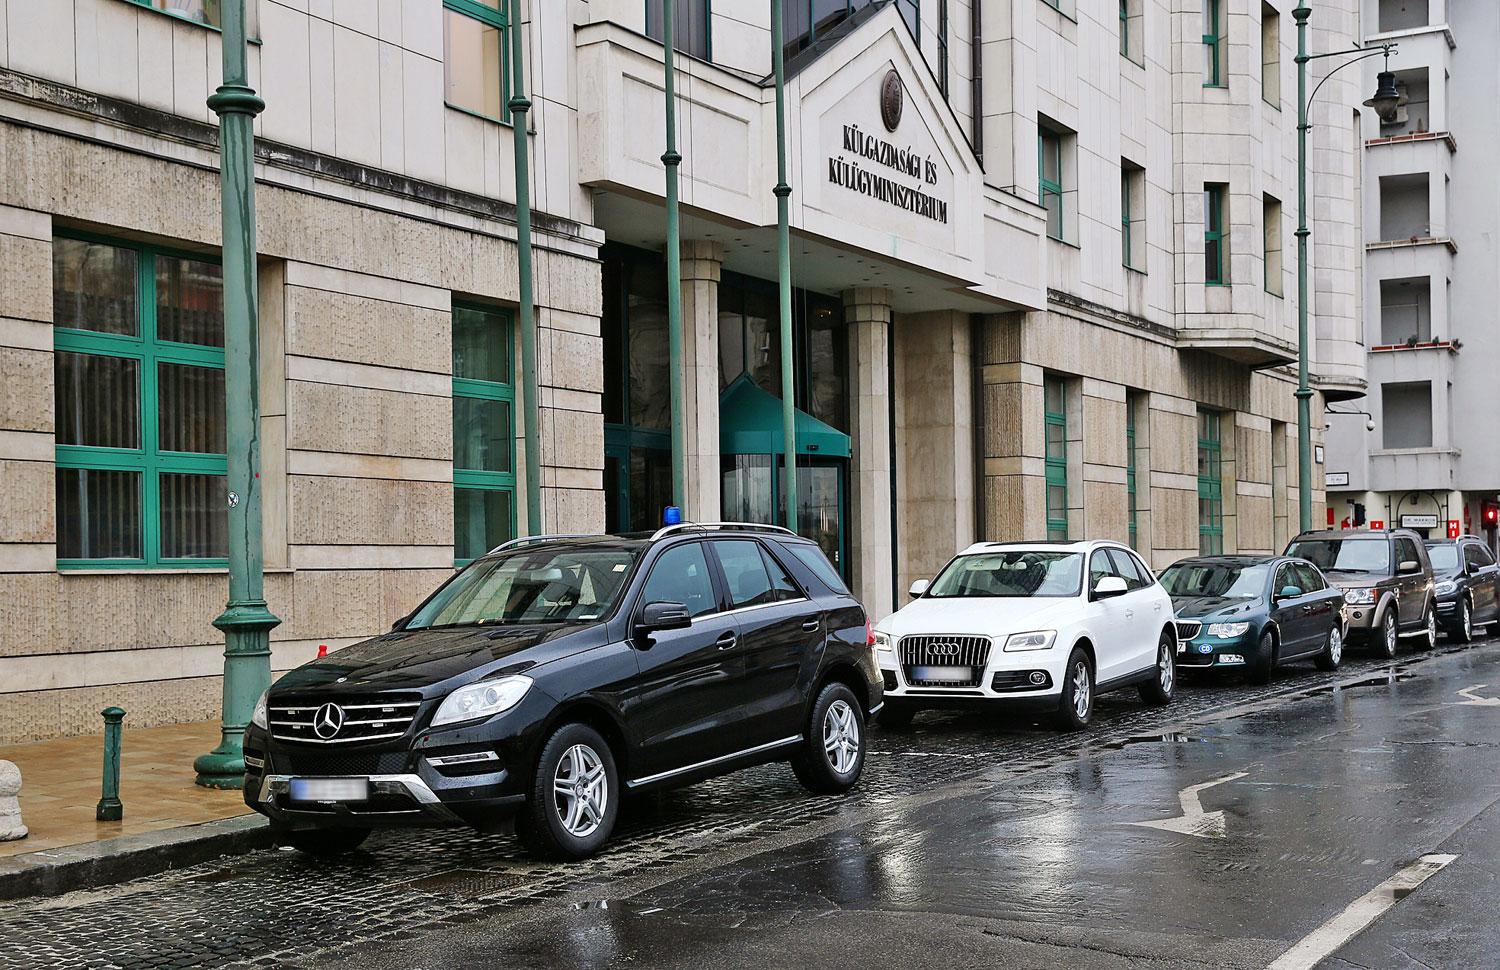 Drága szolgálati limuzinok a Külügyminisztérium főbejáratánál 